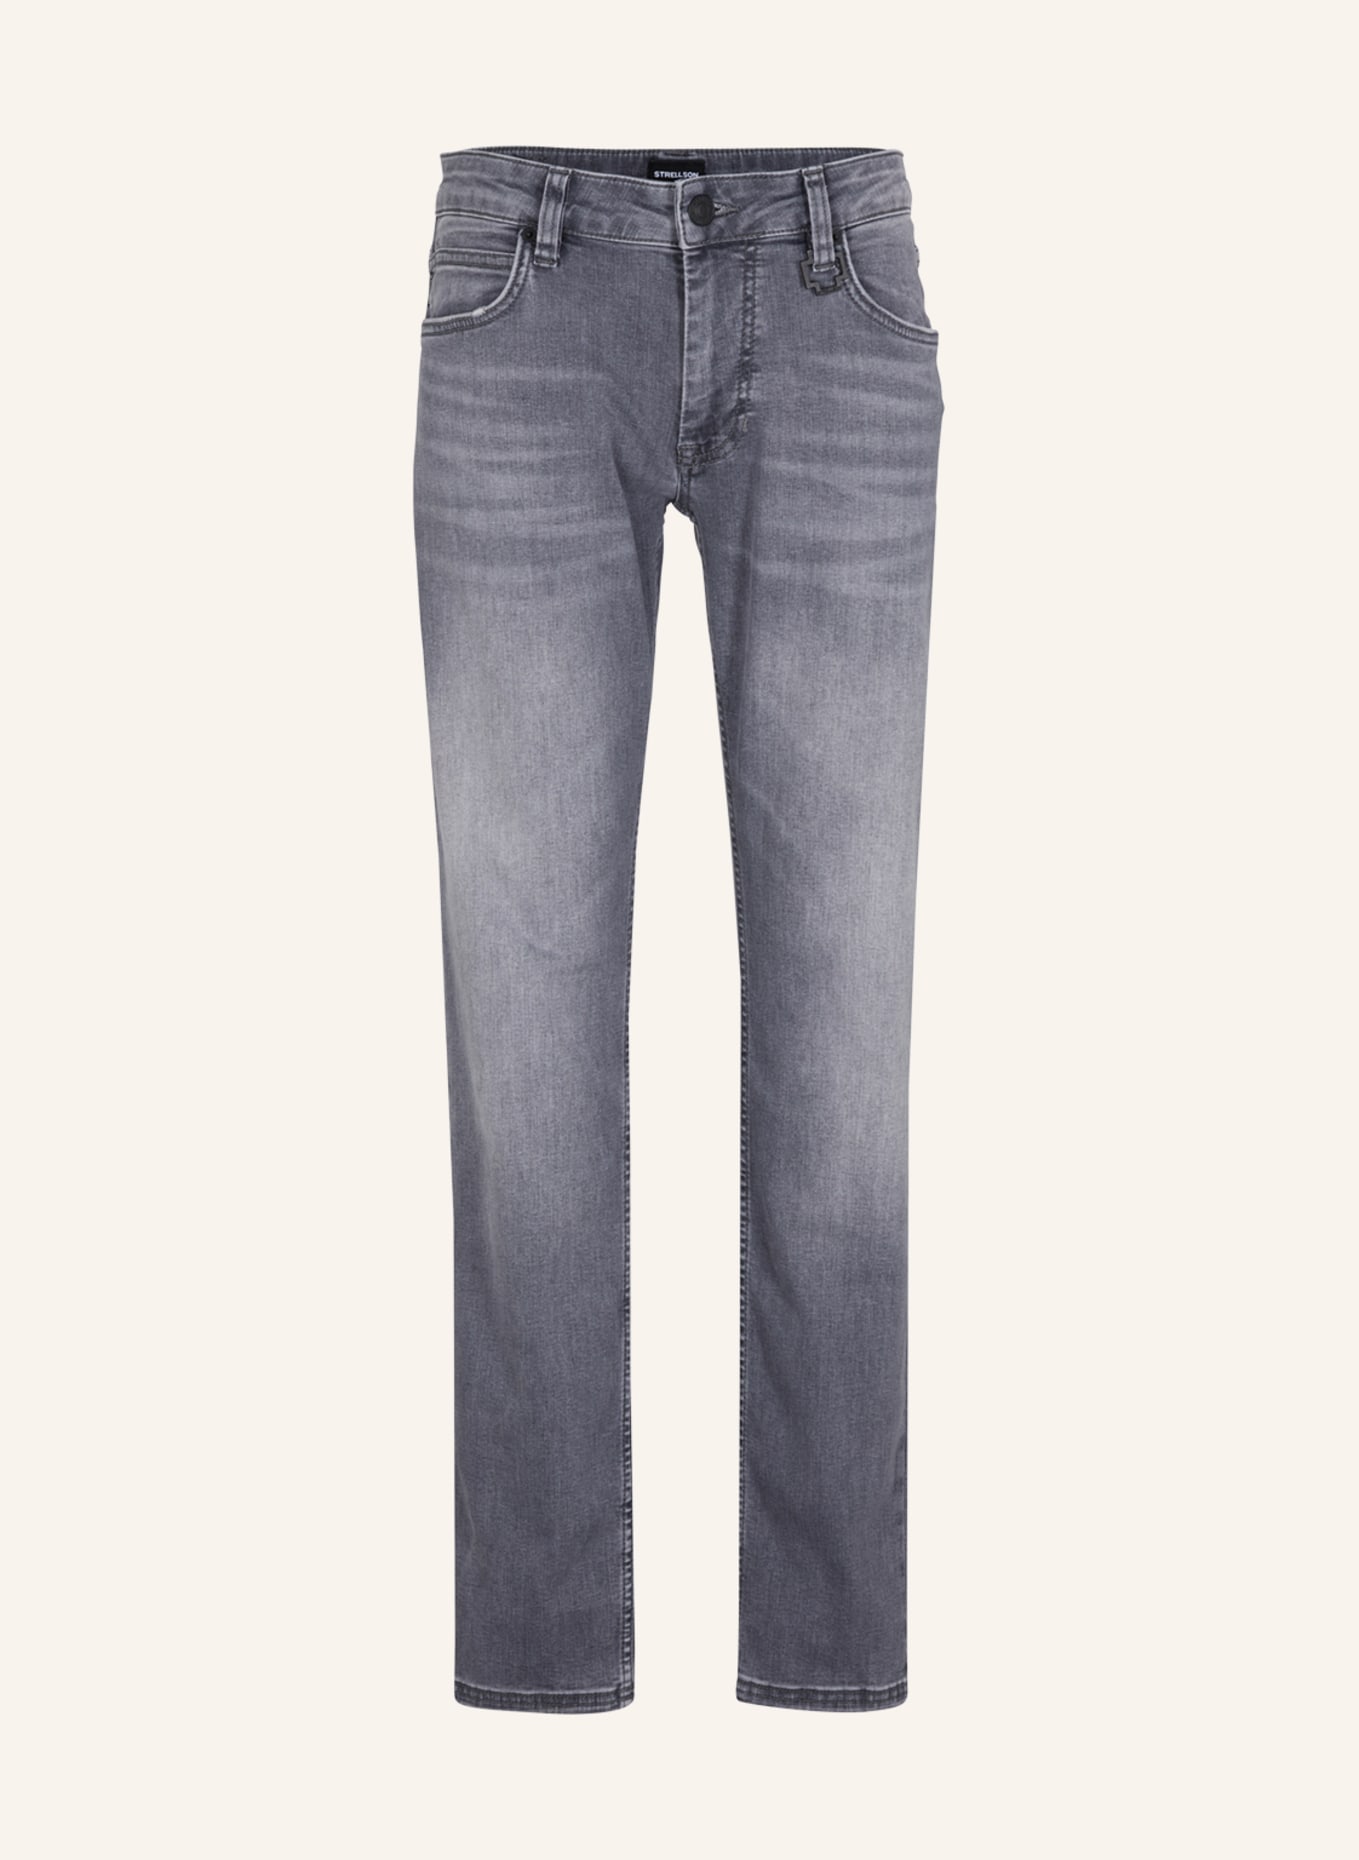 STRELLSON Jeans ROBIN, Farbe: GRAU (Bild 1)